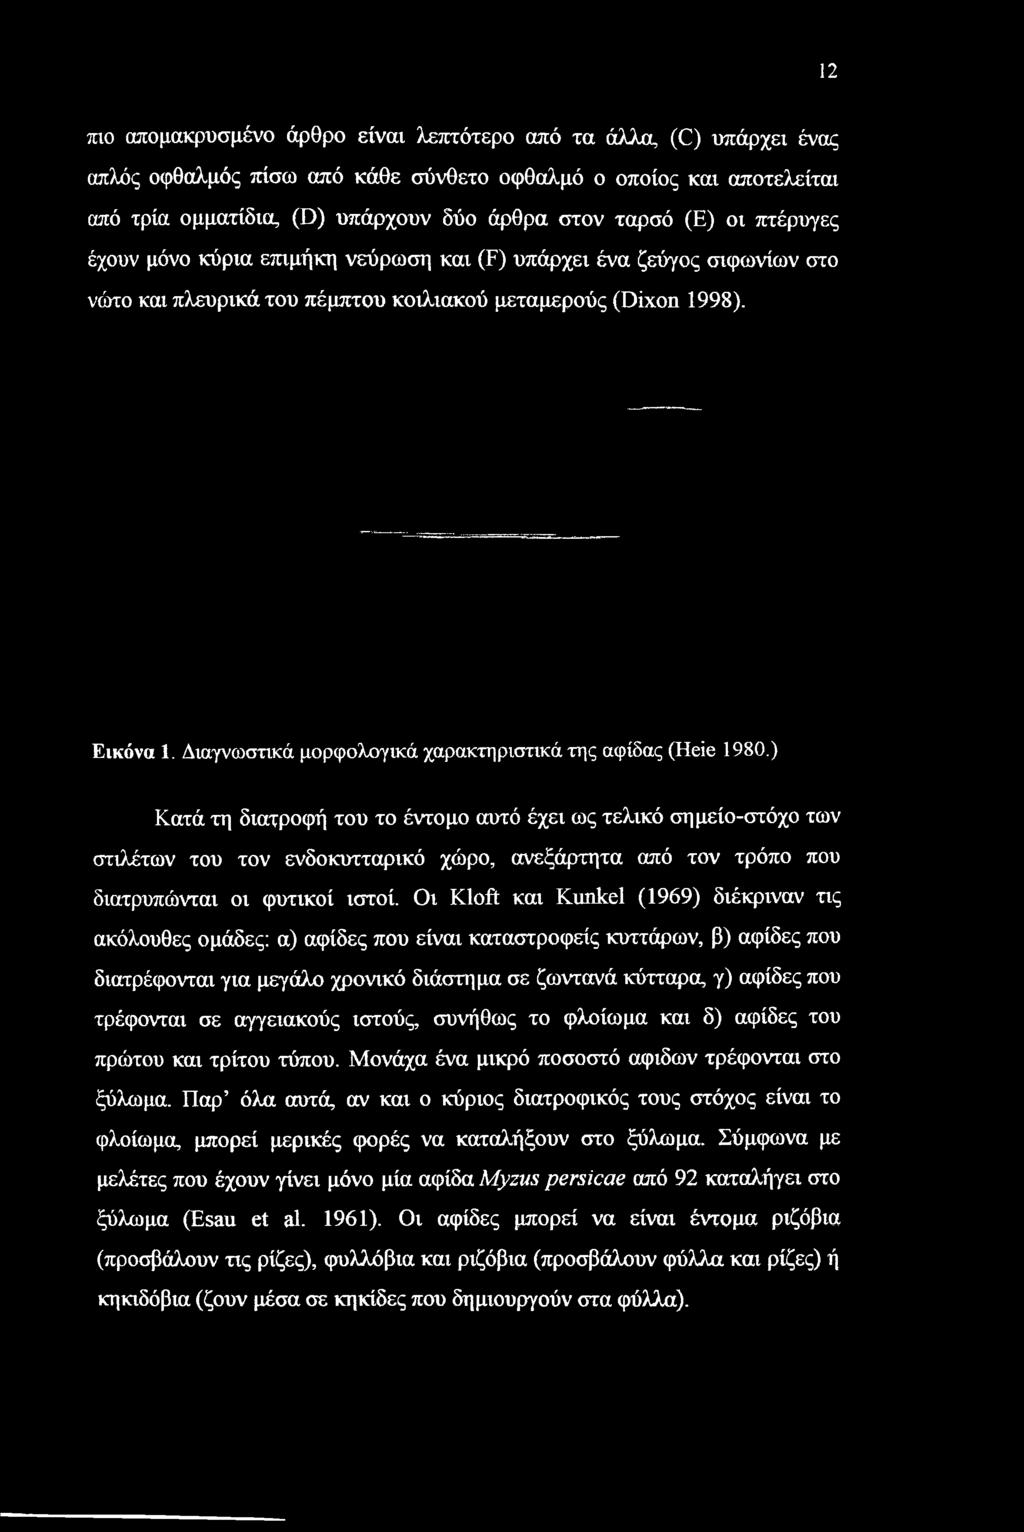 Διαγνωστικά μορφολογικά χαρακτηριστικά της αφίδας (Heie 1980.